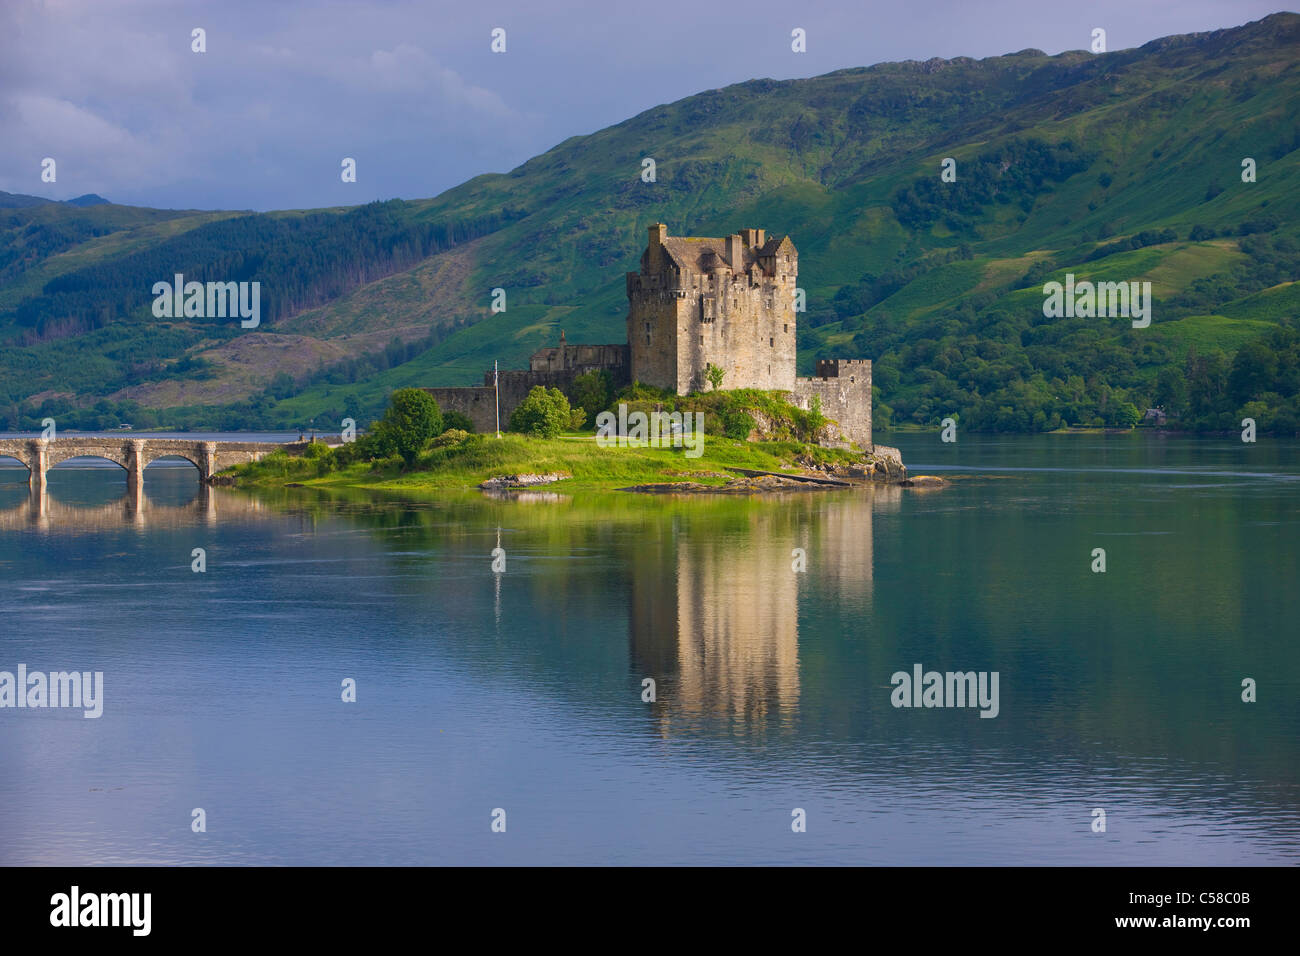 Le Château d'Eilean Donan, Grande Bretagne, Ecosse, Europe, mer, côte, les marées, les inondations, island, île, château, pont, réflexion Banque D'Images